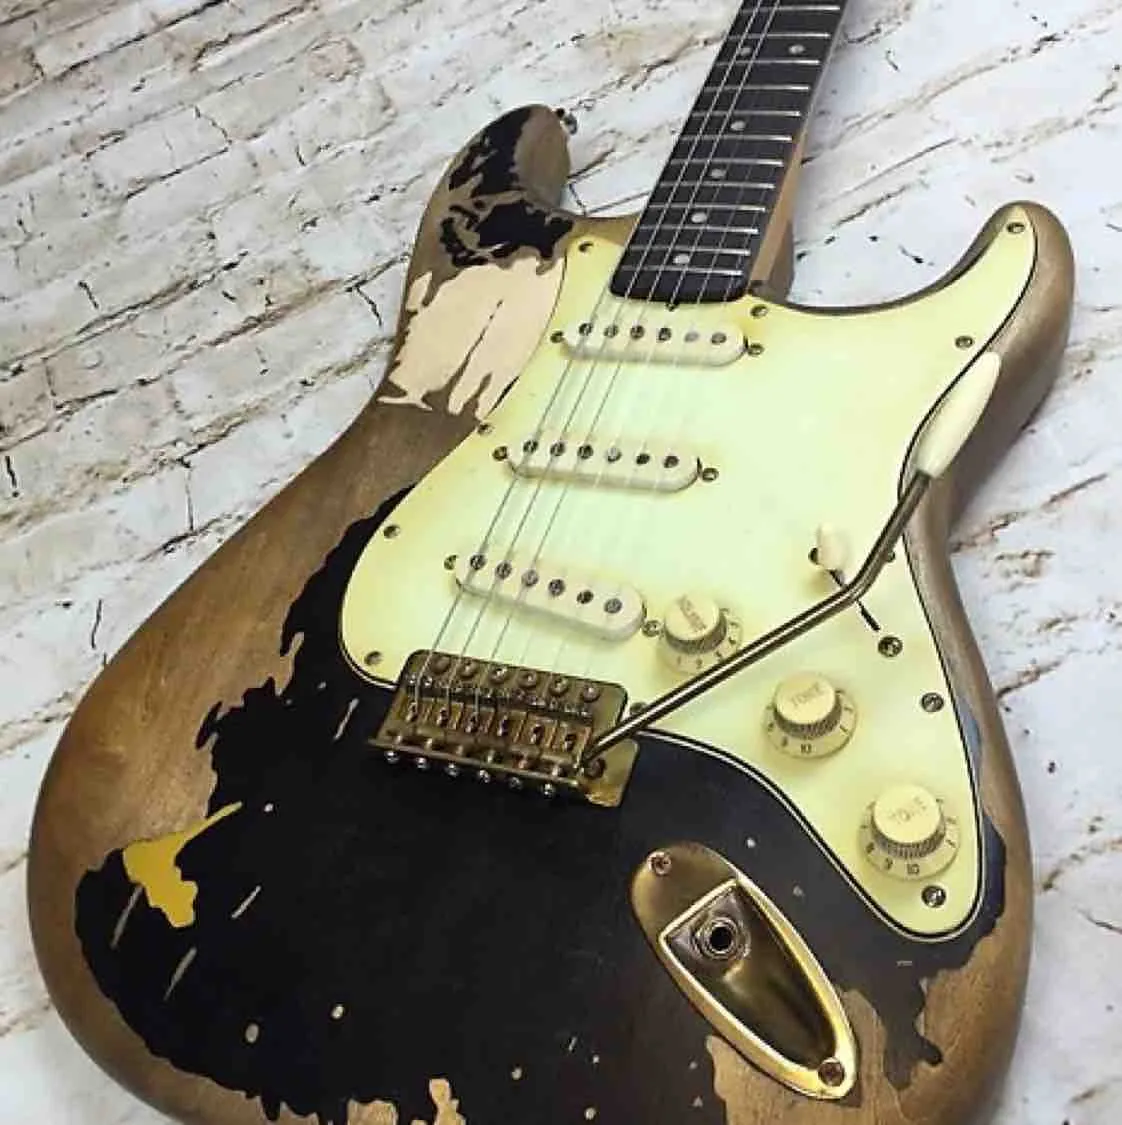 재고 손으로 John Mayer Relic Black 1 Masterbuilt Electric Guitar Aged Gold Hardware Nitrolacquer Paint Tremolo Bridge Whammy Bar Vintage Tuner